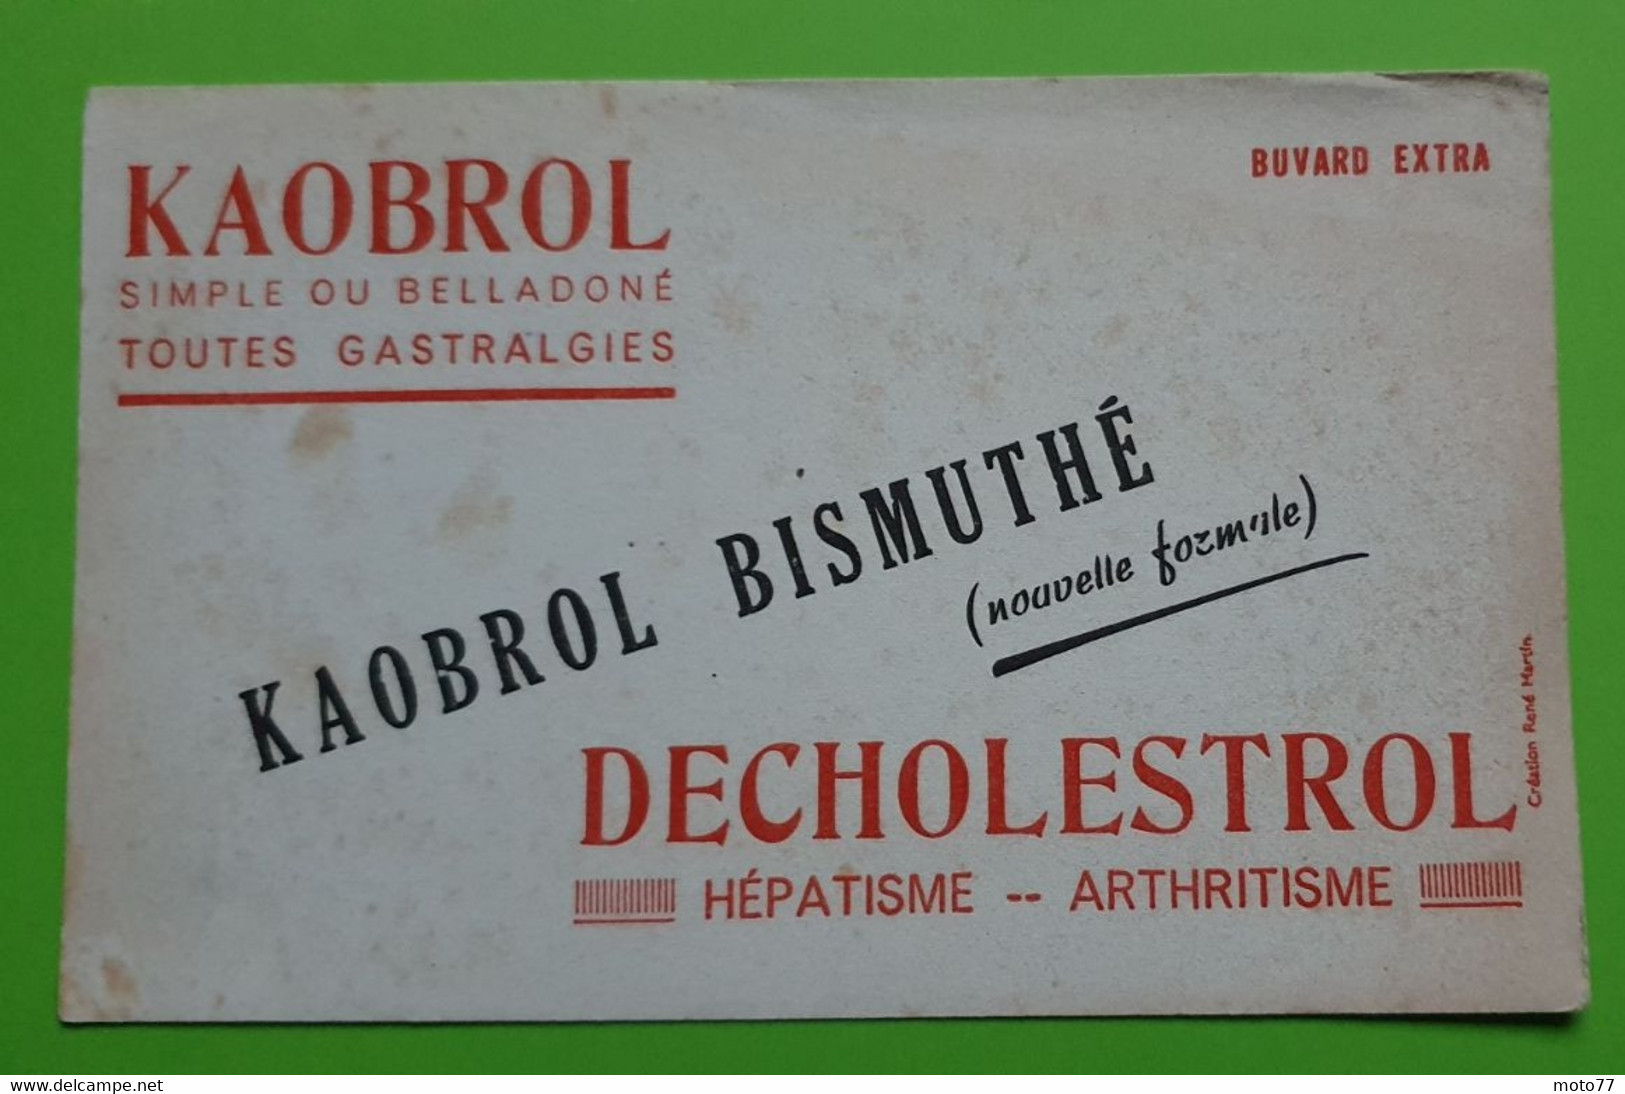 Buvard 980 - Laboratoire - KAOBROL DECHOLESTROL - Etat D'usage : Voir Photos- 20.5x13 Cm Environ - Vers 1950 - Produits Pharmaceutiques